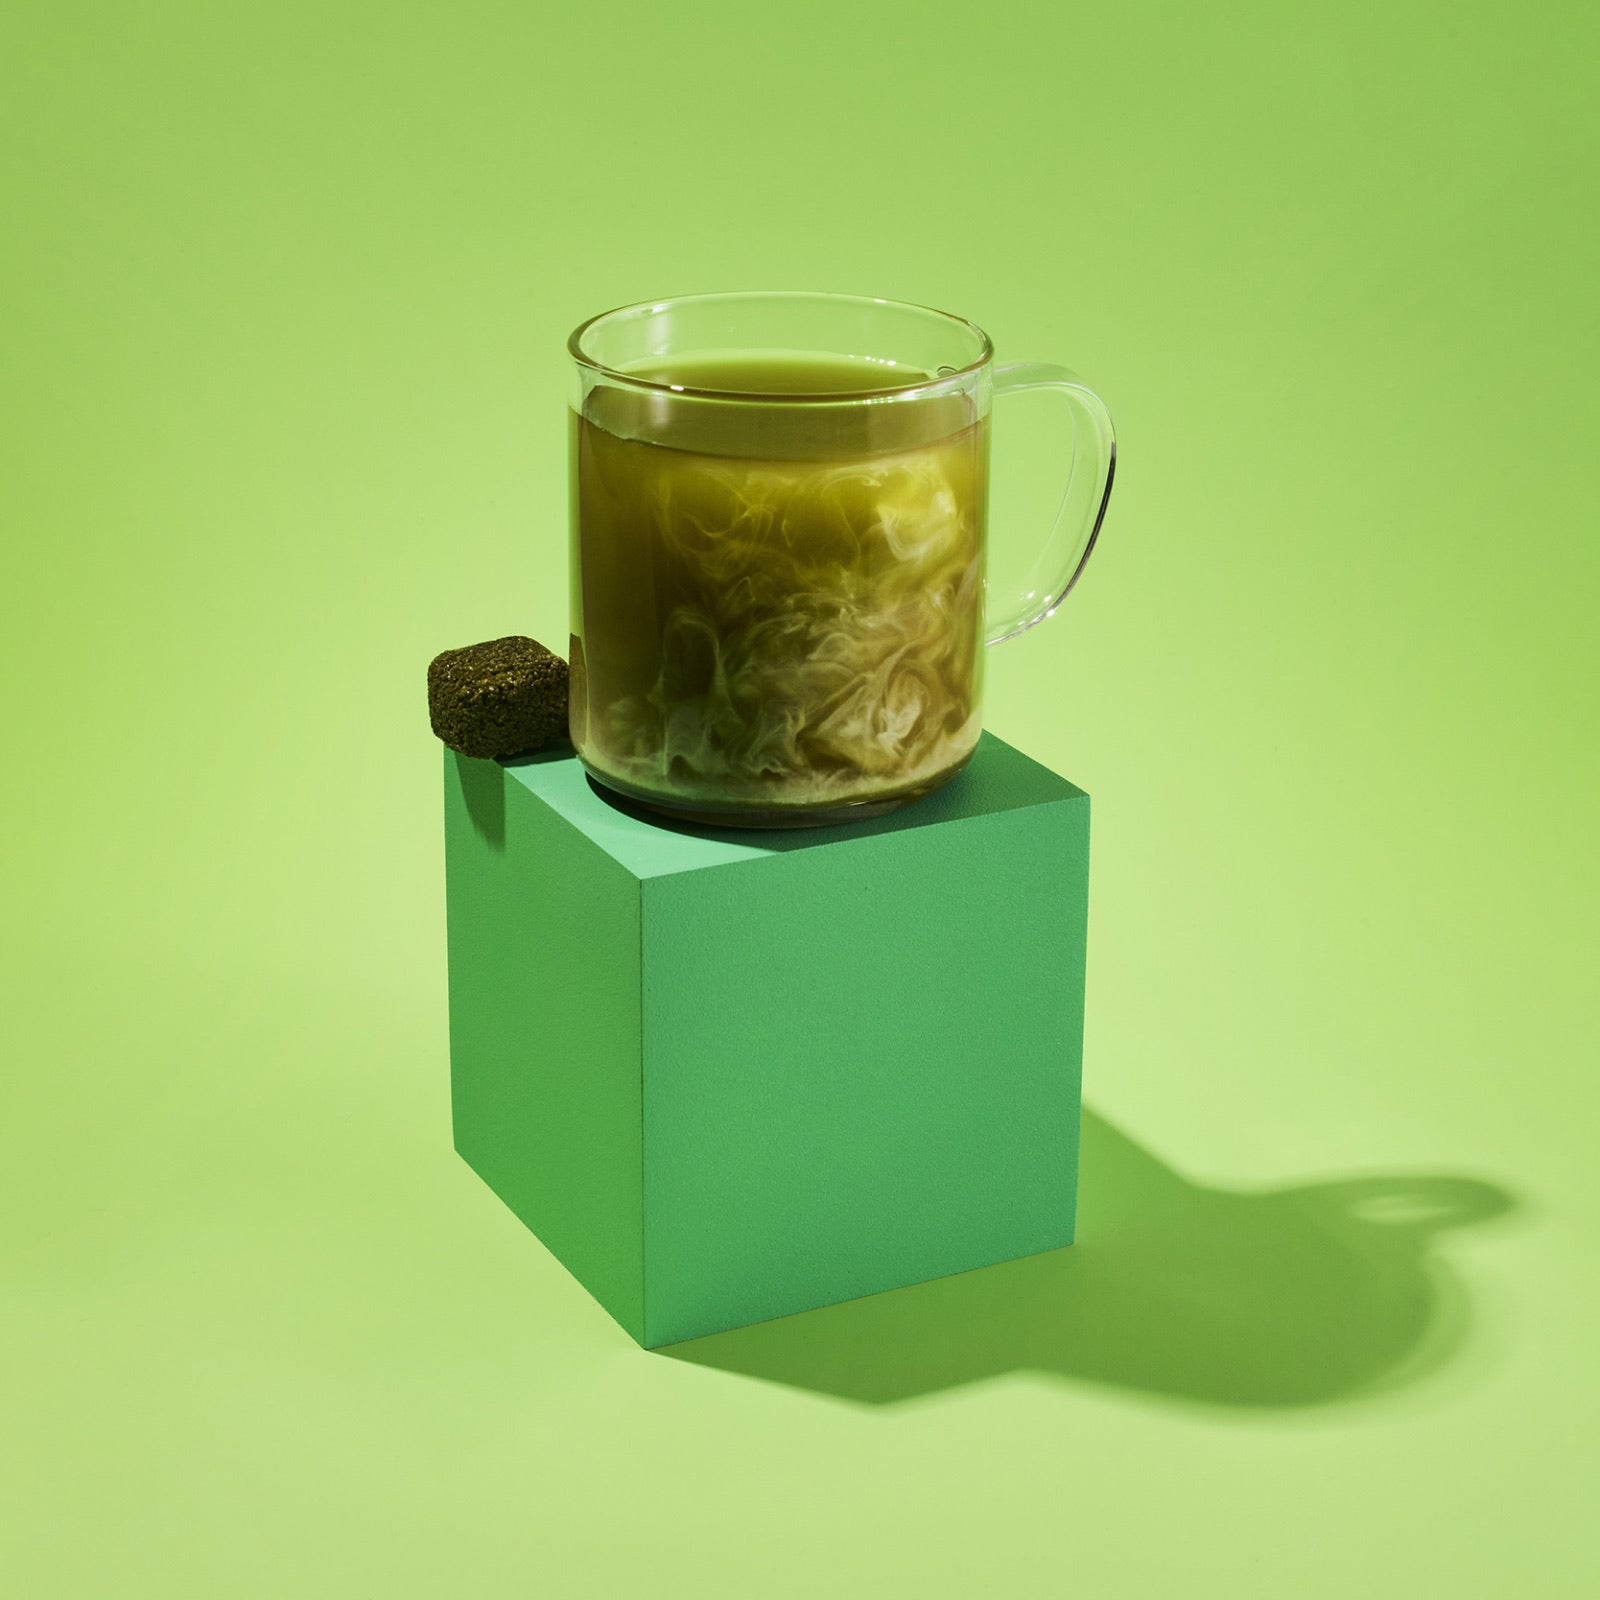 Buy Matcha Tea & Accessories online – Paper & Tea